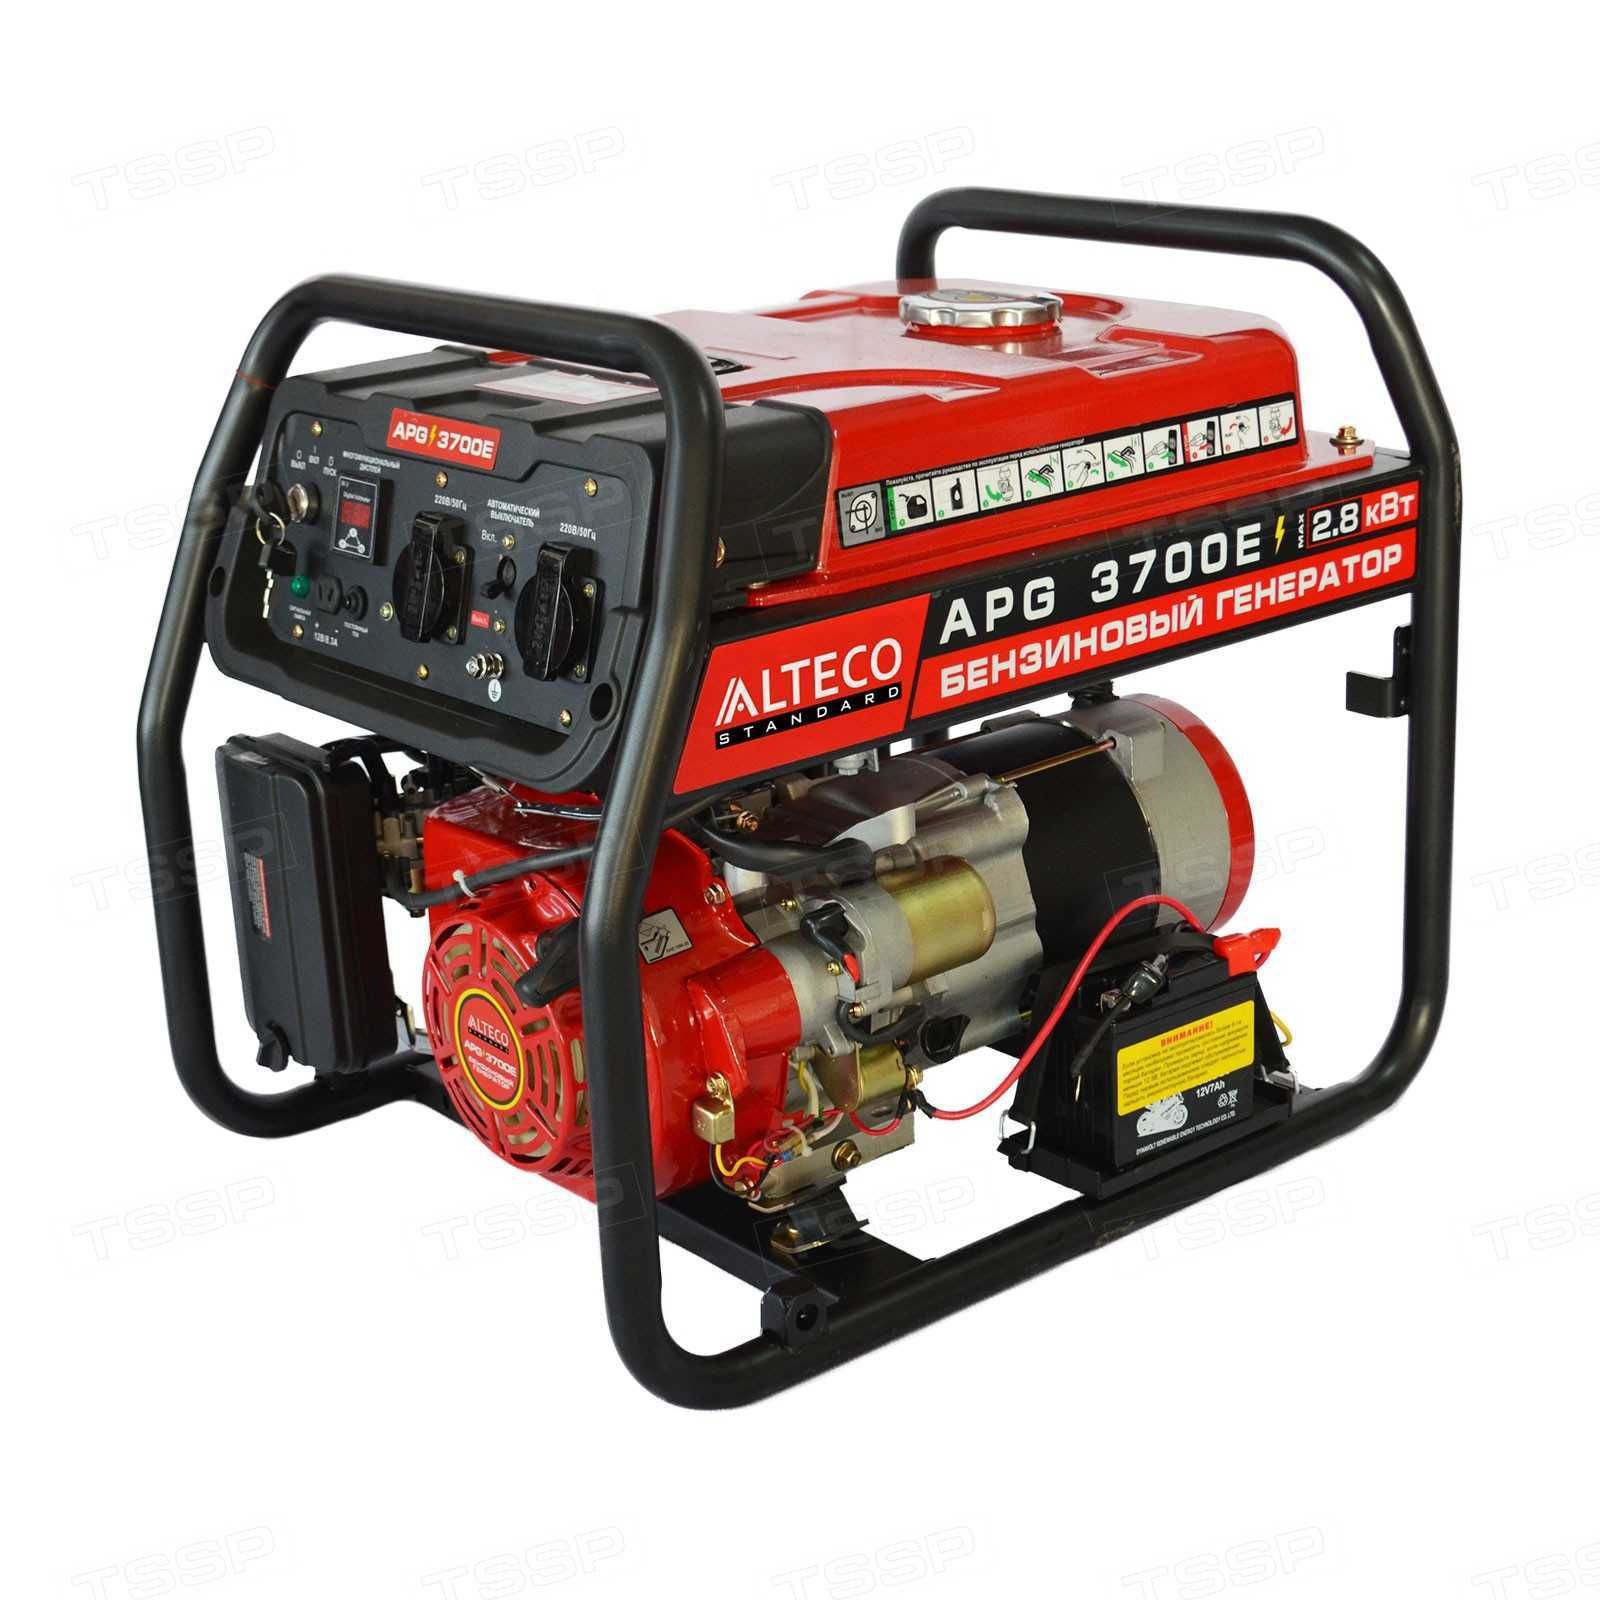 Продам Бензиновый генератор ALTECO APG-3700E (N) / 2.5кВт / 220В